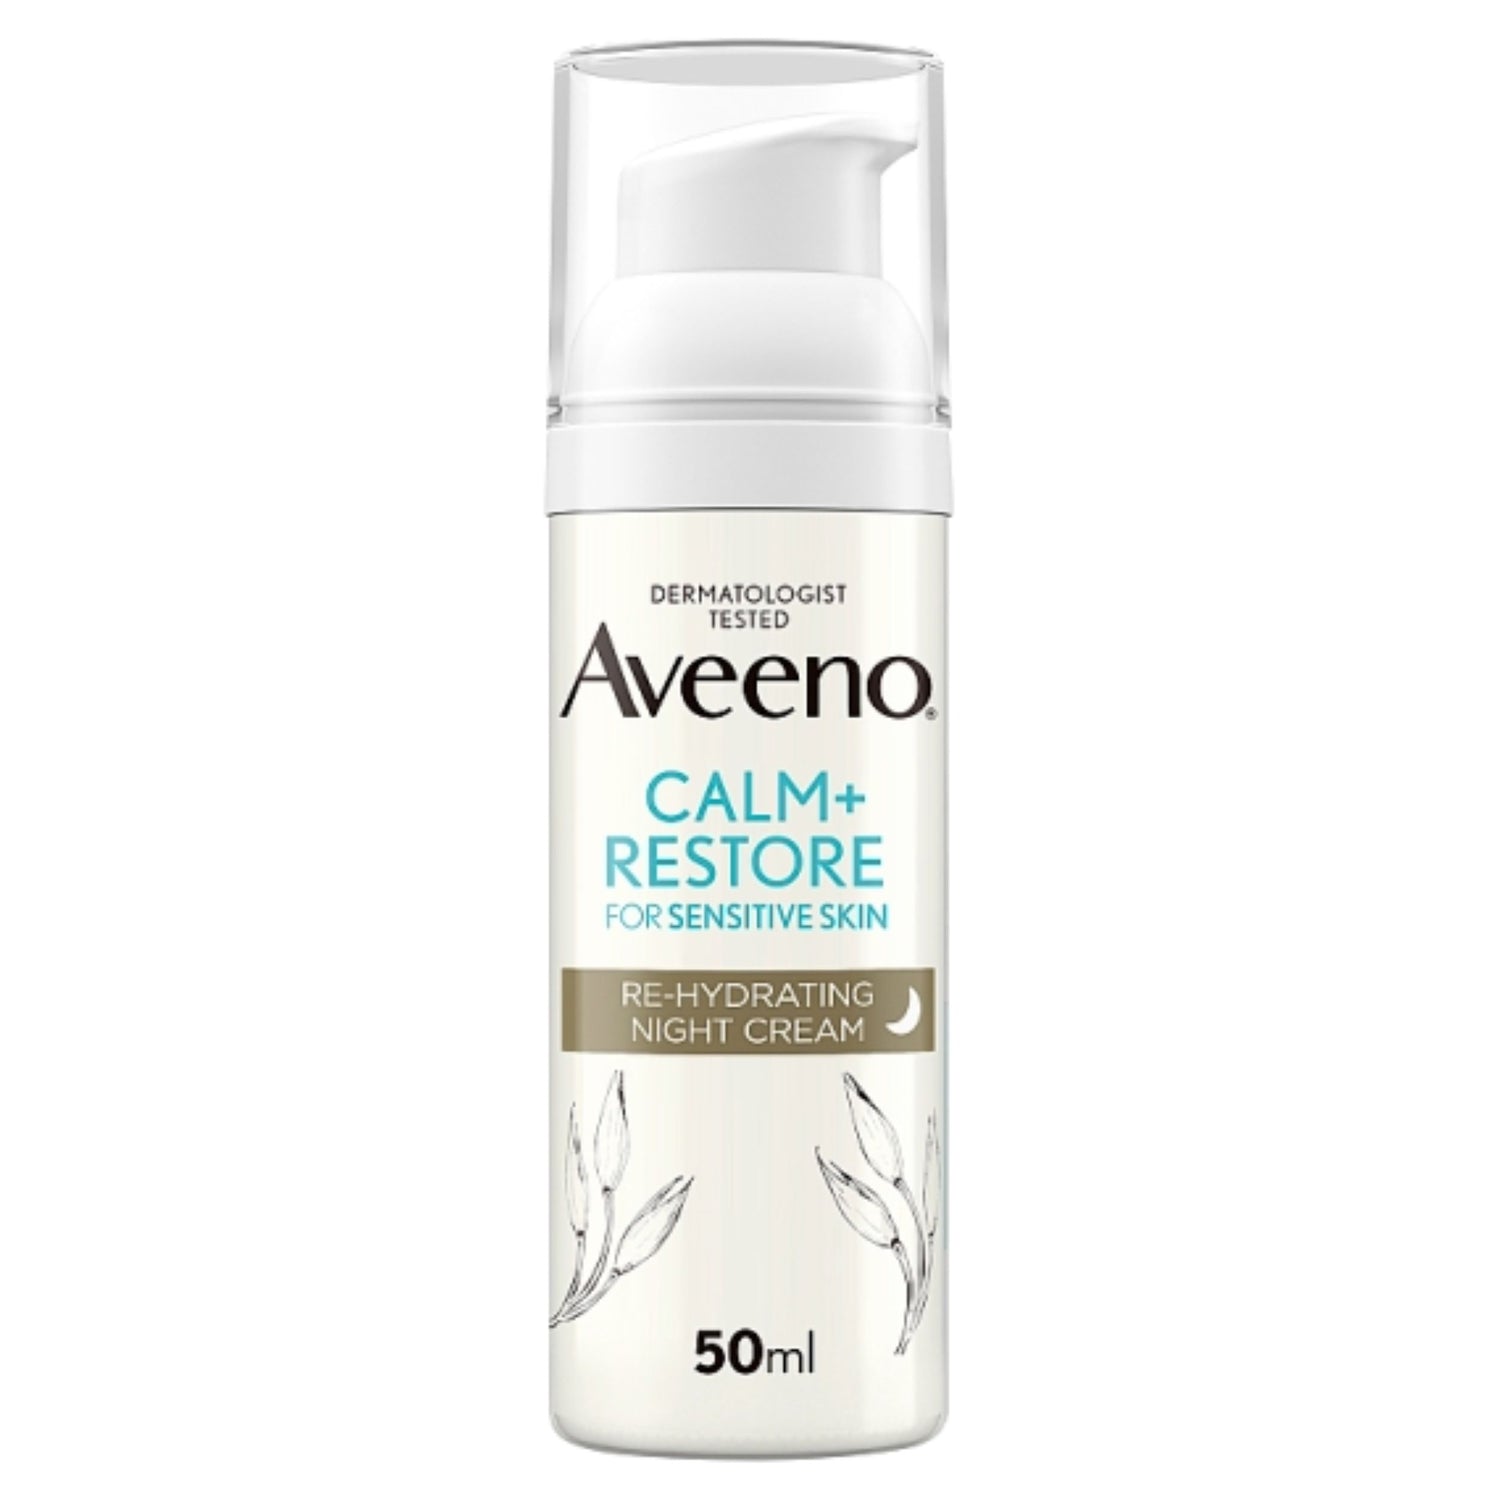 Aveeno Calm+ Restore Re-Hydrating Night Cream 50ml